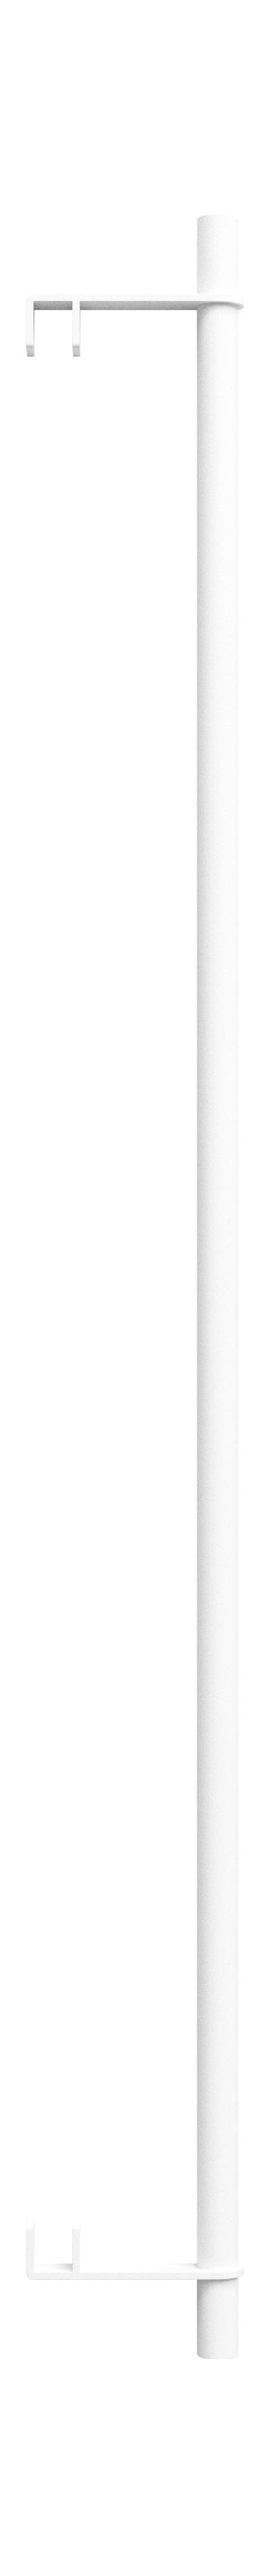 Moebe -Regalsystem/Wandregal Kleidung Bar 85 cm, weiß